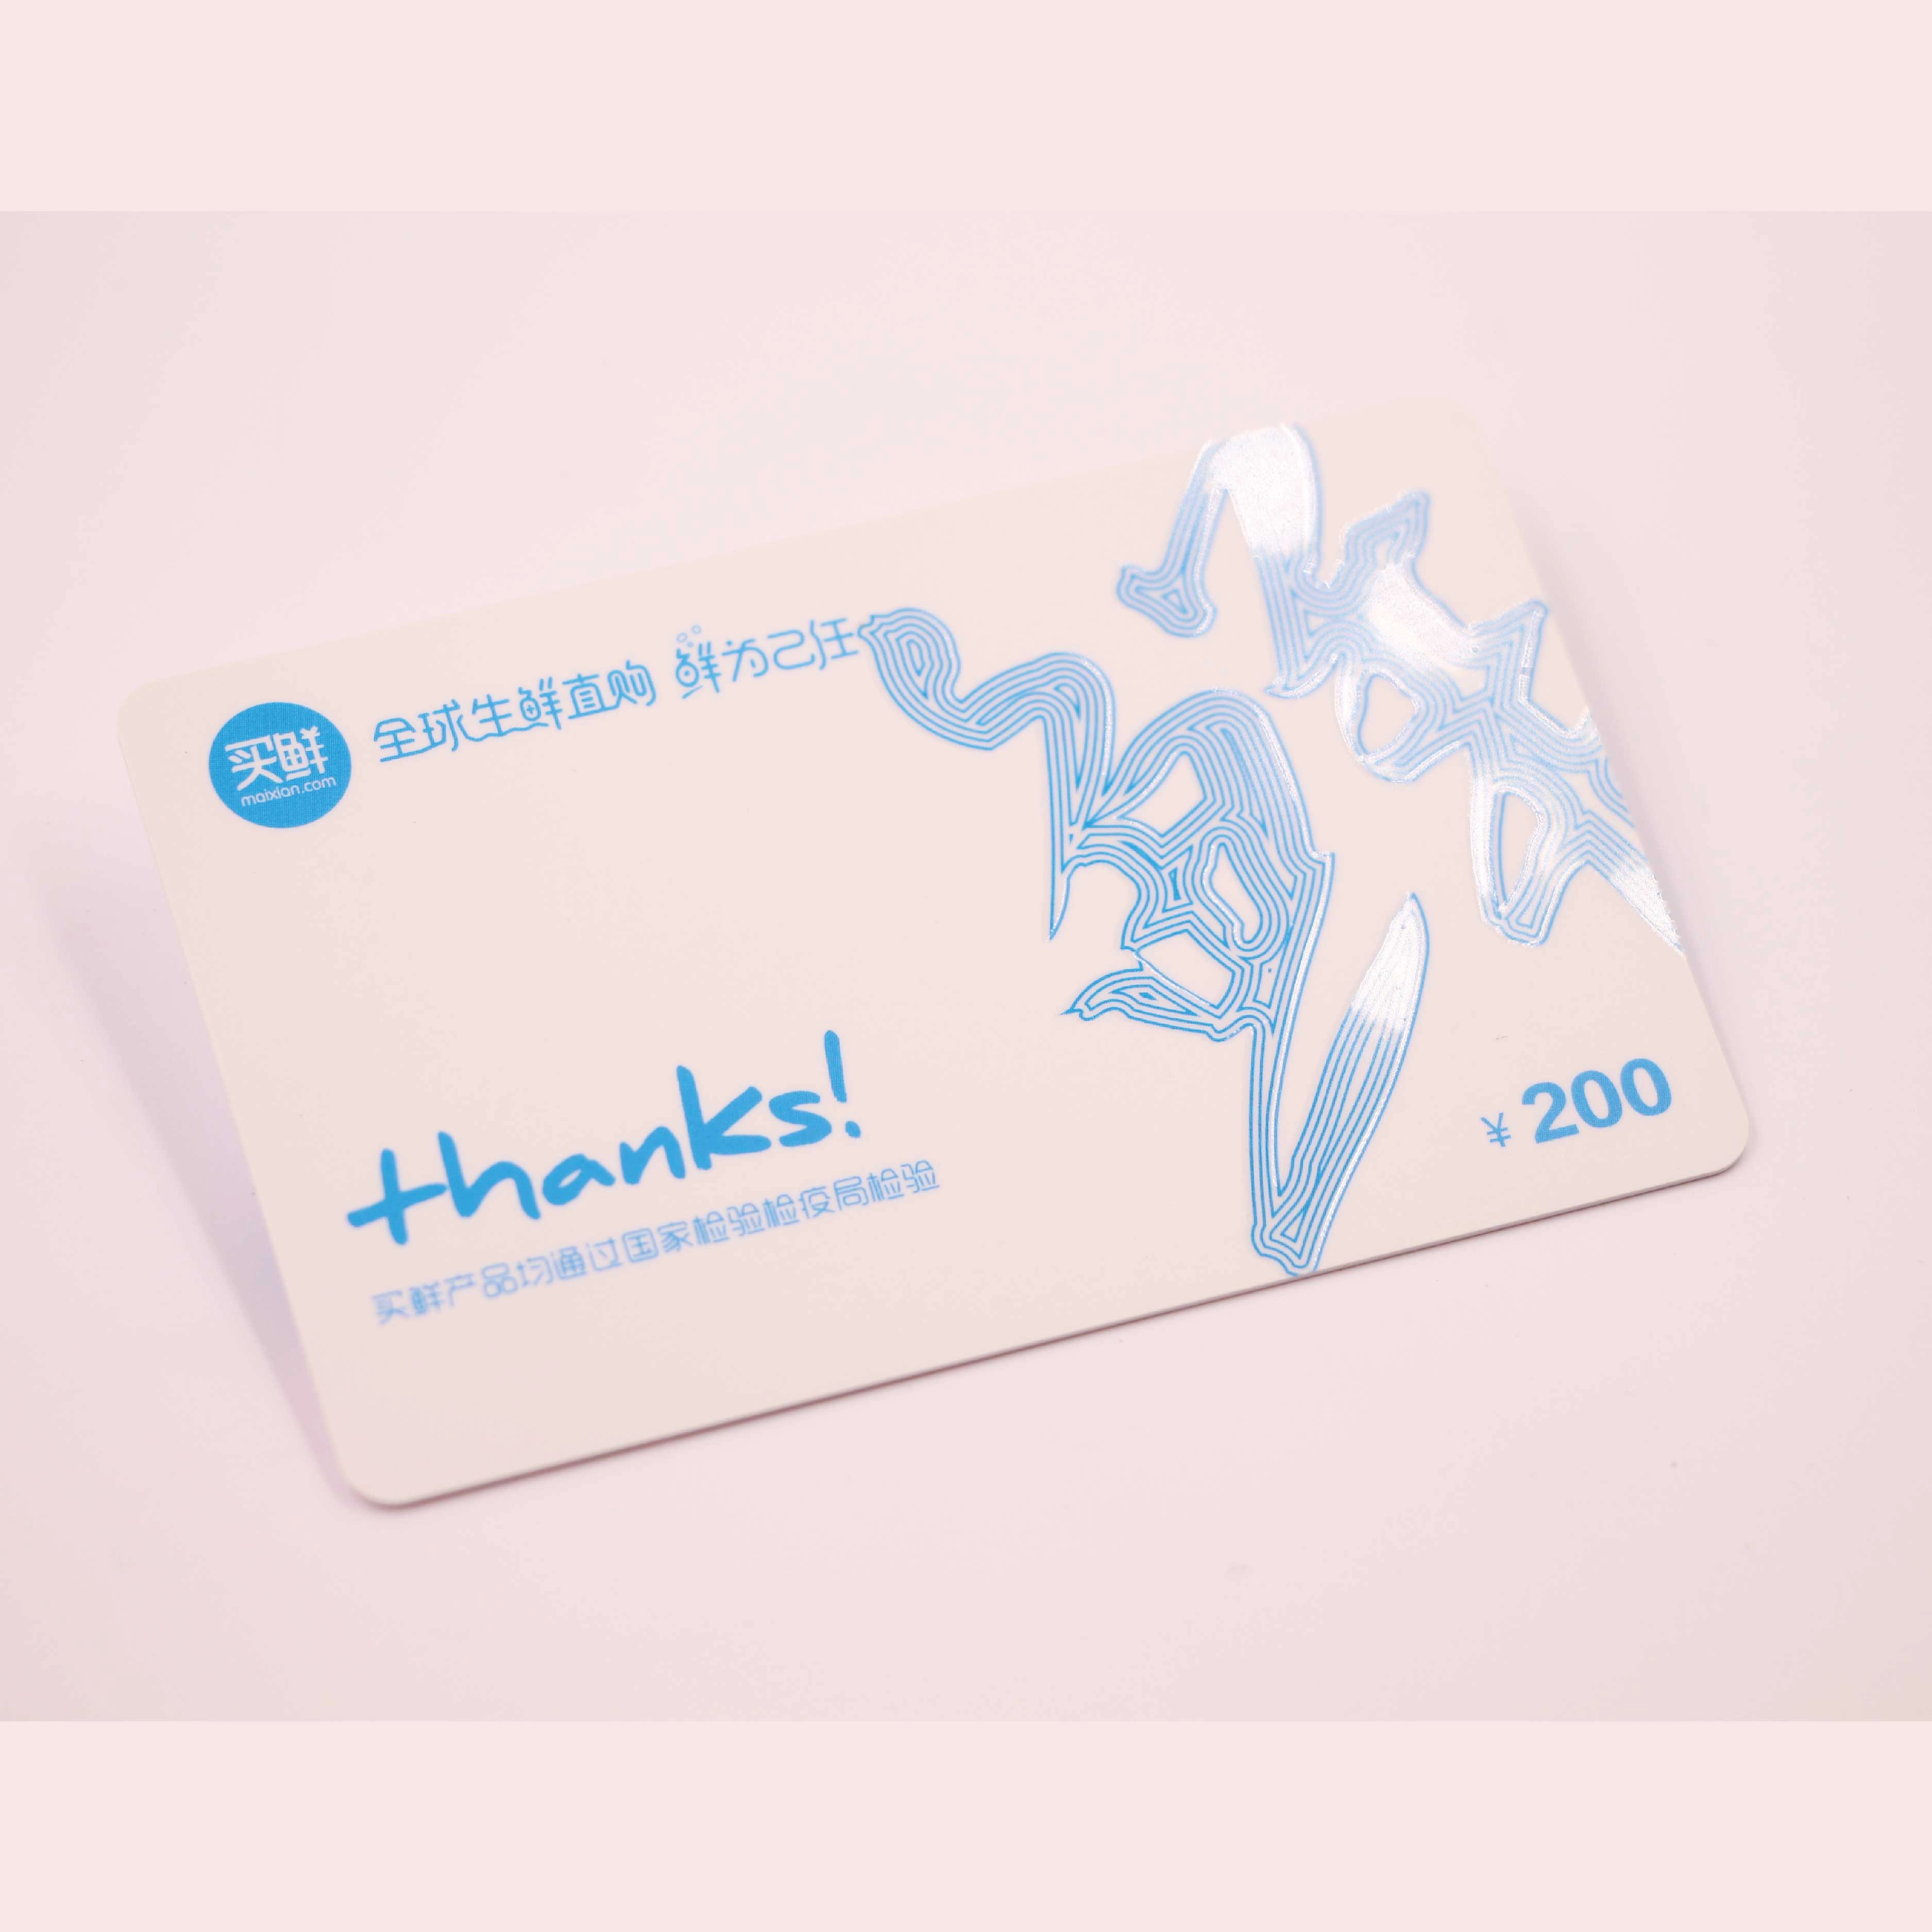 Thẻ tín dụng dành cho thành viên của cửa hàng tạp hóa